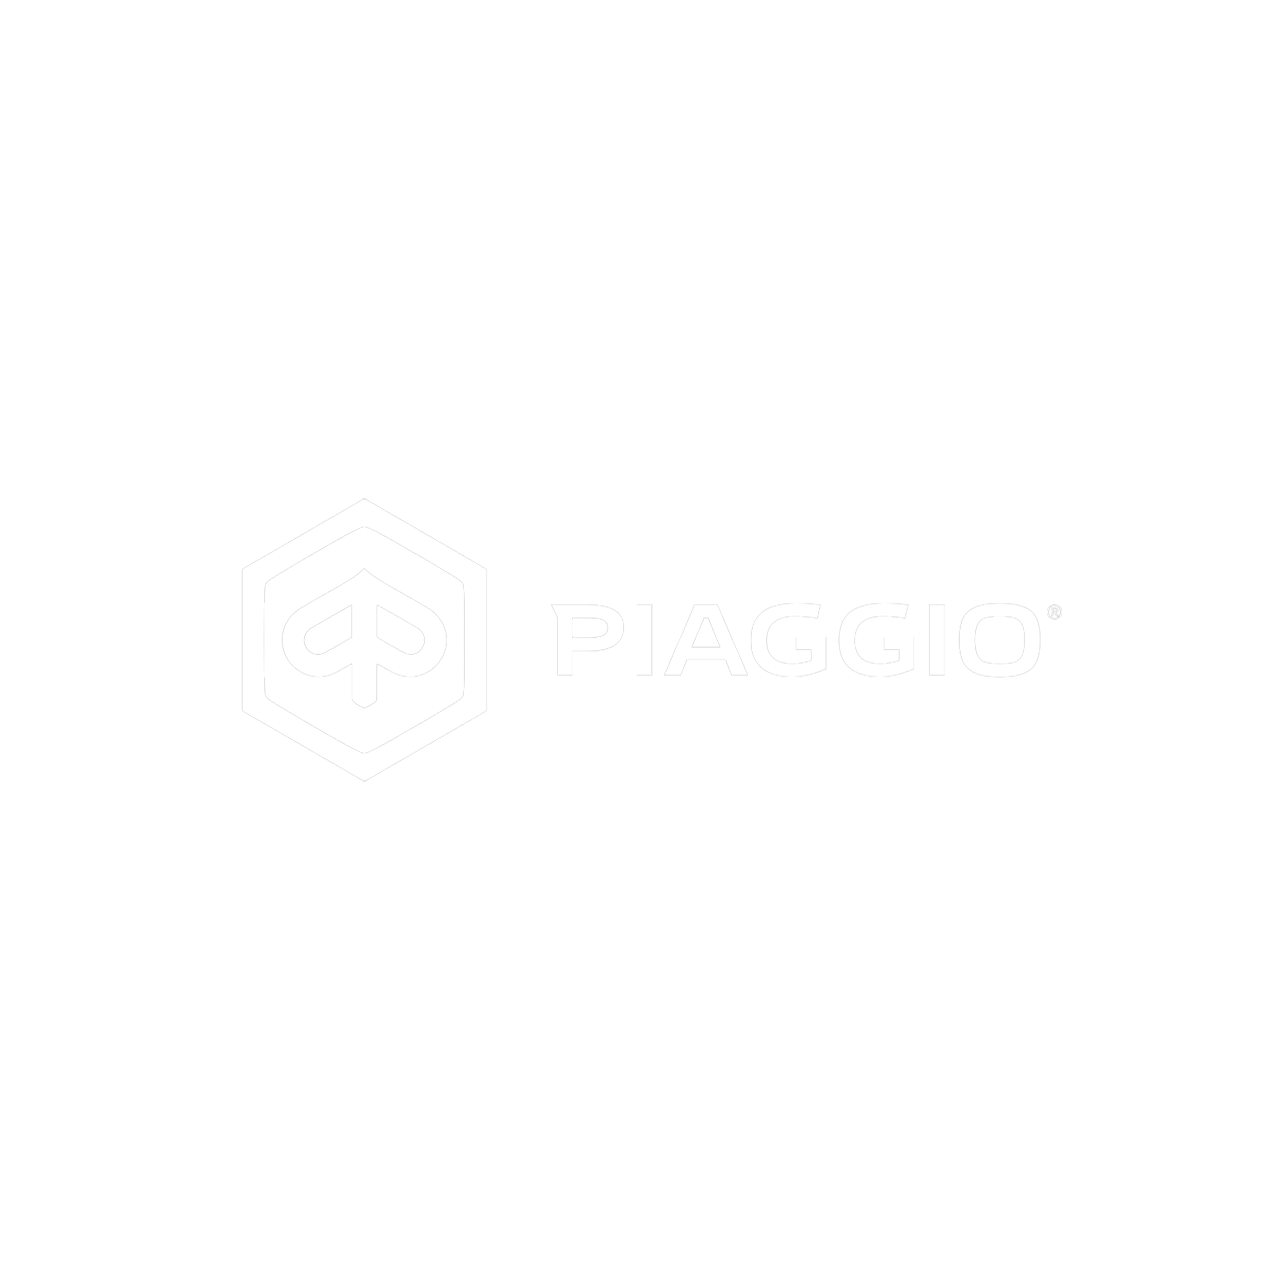 Piaggio : Brand Short Description Type Here.